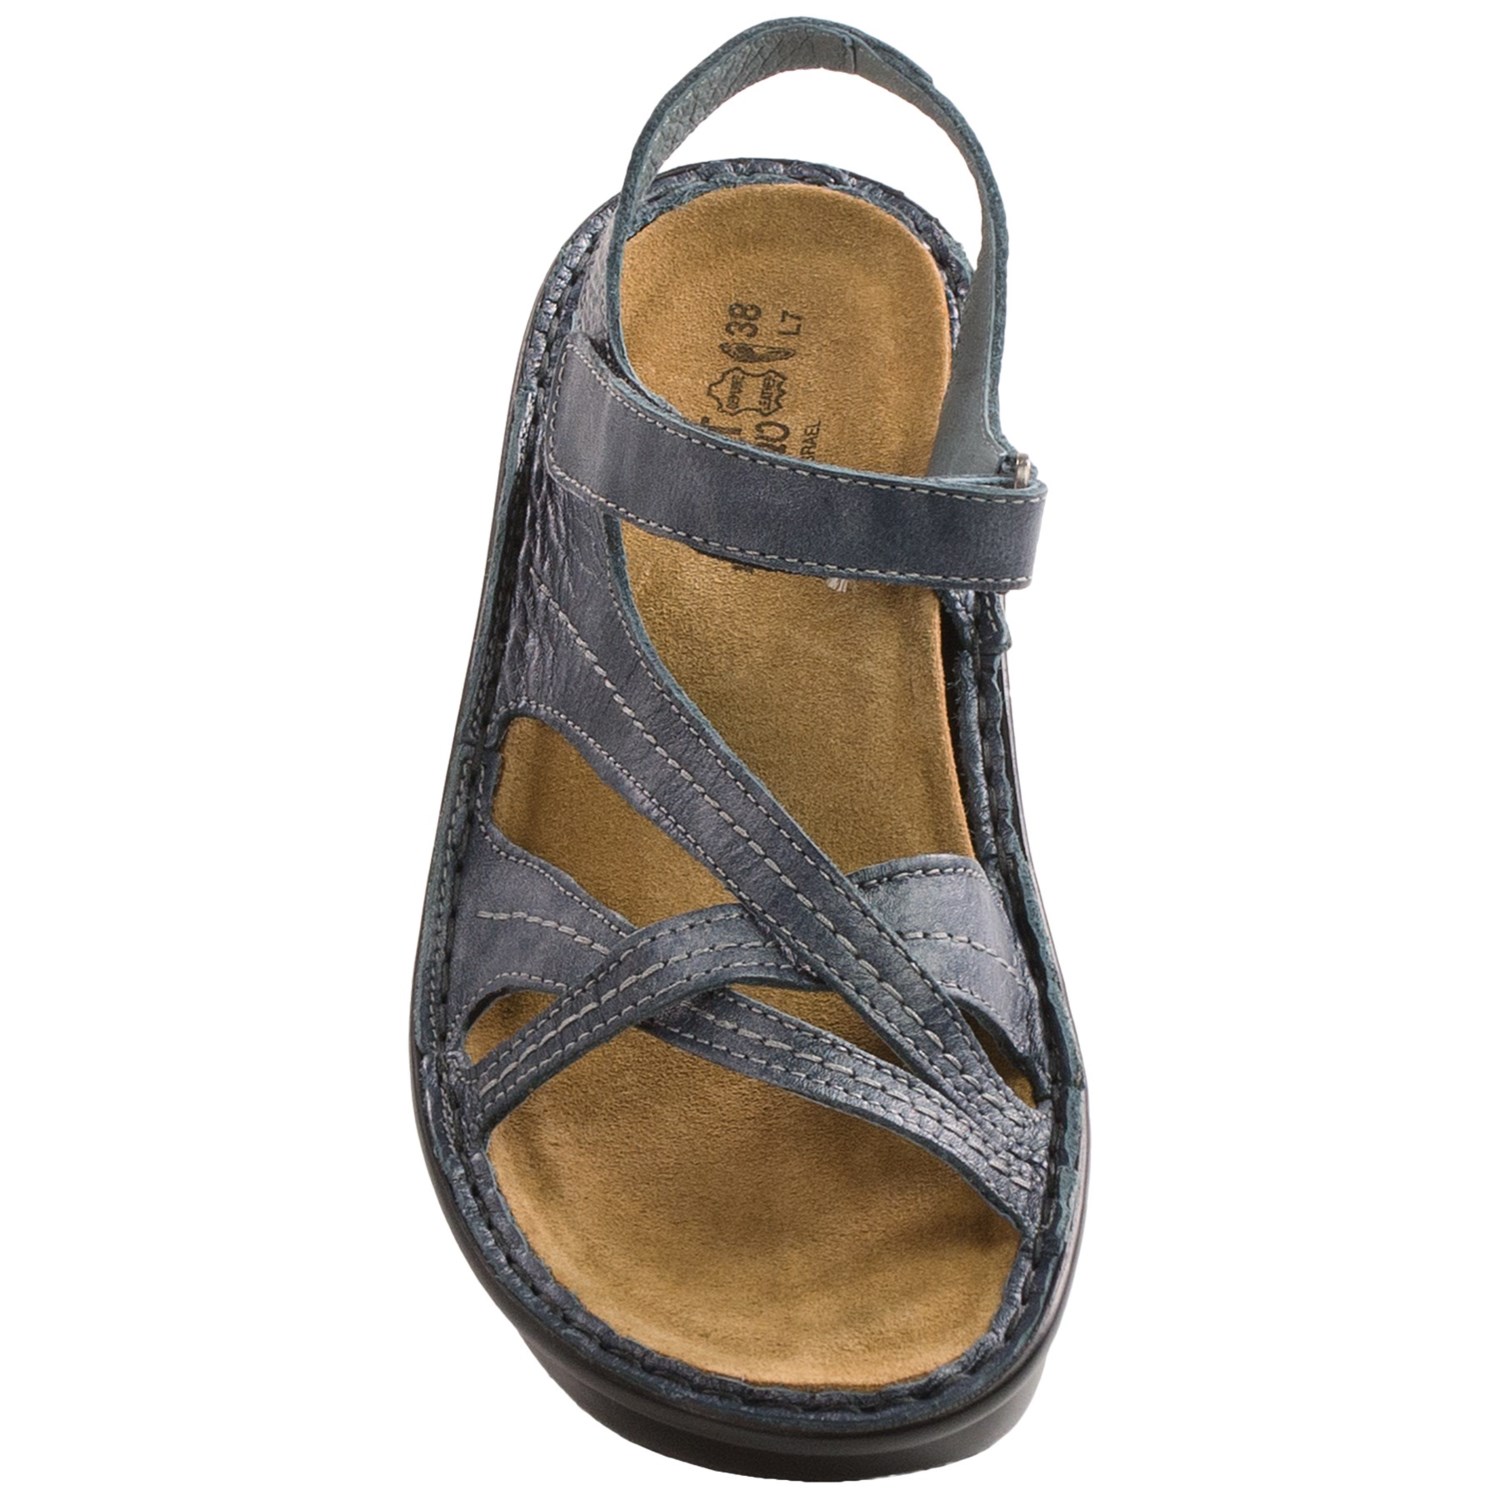 Naot Paris Sandals (For Women) 9172Y - Save 46%